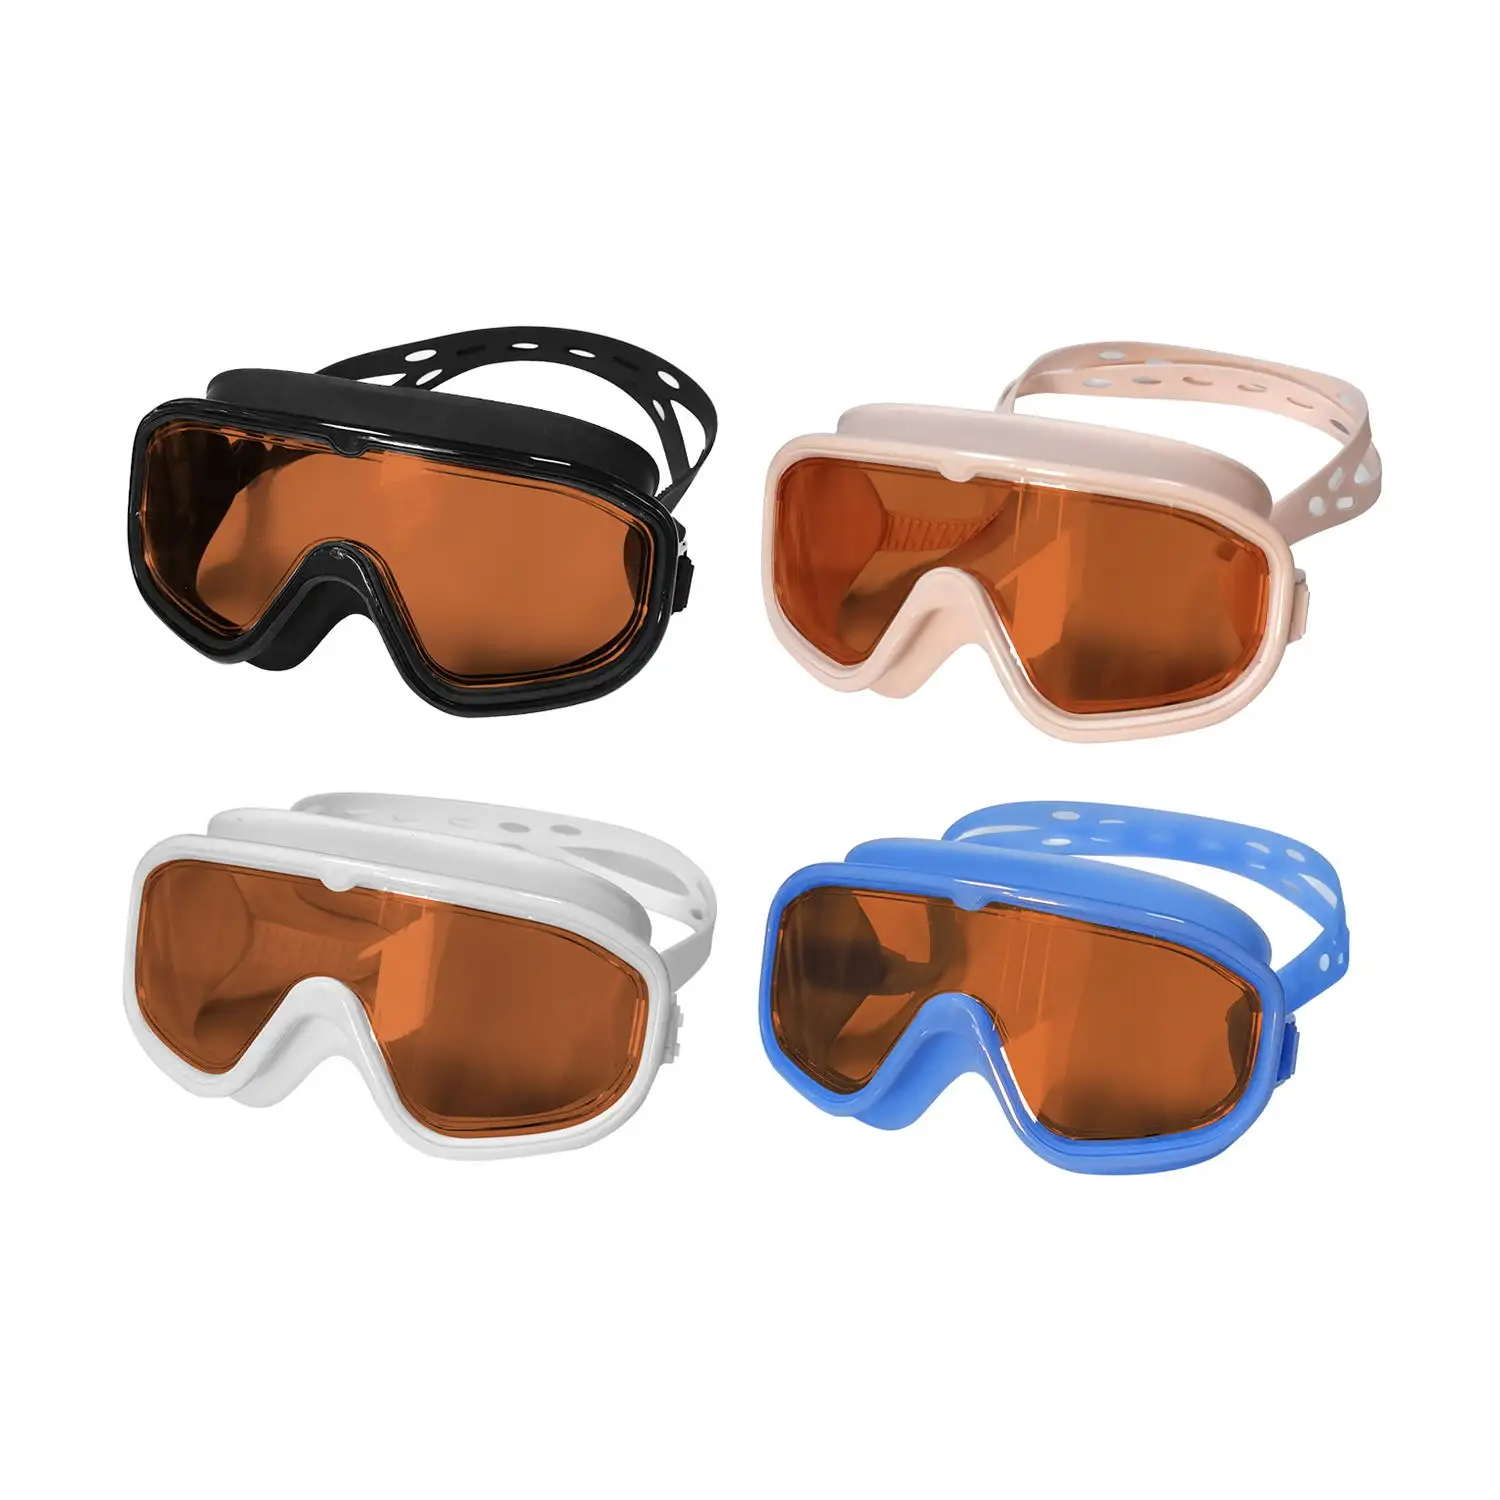 OEM kacamata renang anak-anak Anti kabut desain modis kolam air kacamata bingkai besar kacamata olahraga anak kacamata renang